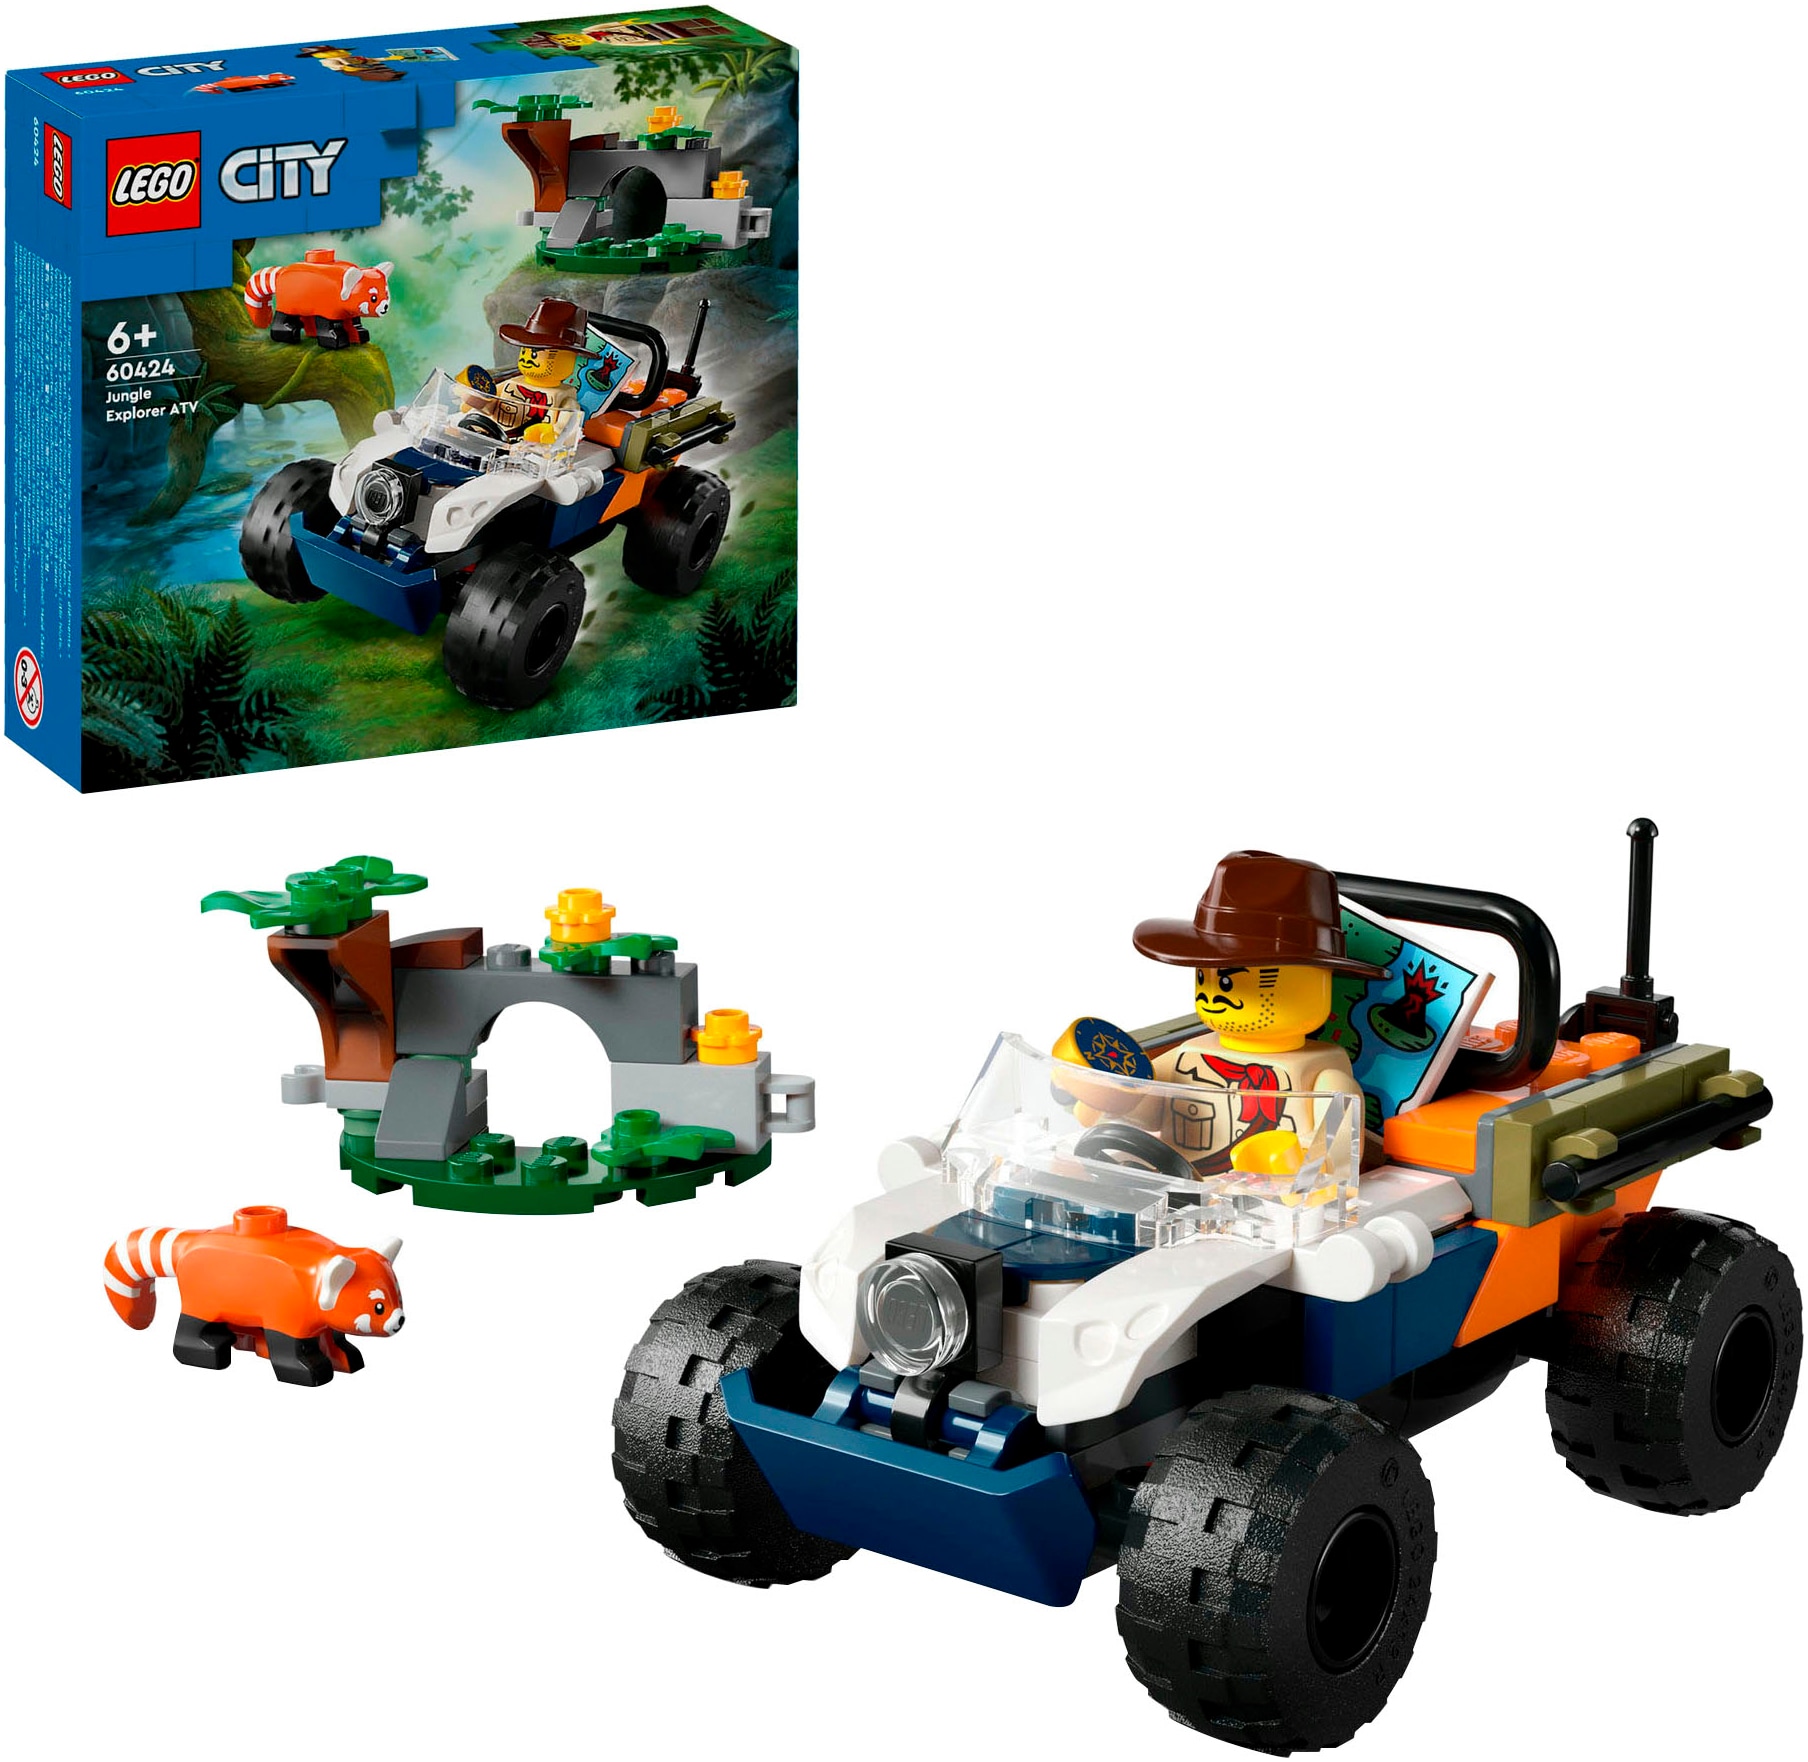 Konstruktionsspielsteine »Dschungelforscher-Quad (60424), LEGO LEGO City«, (92 St.),...